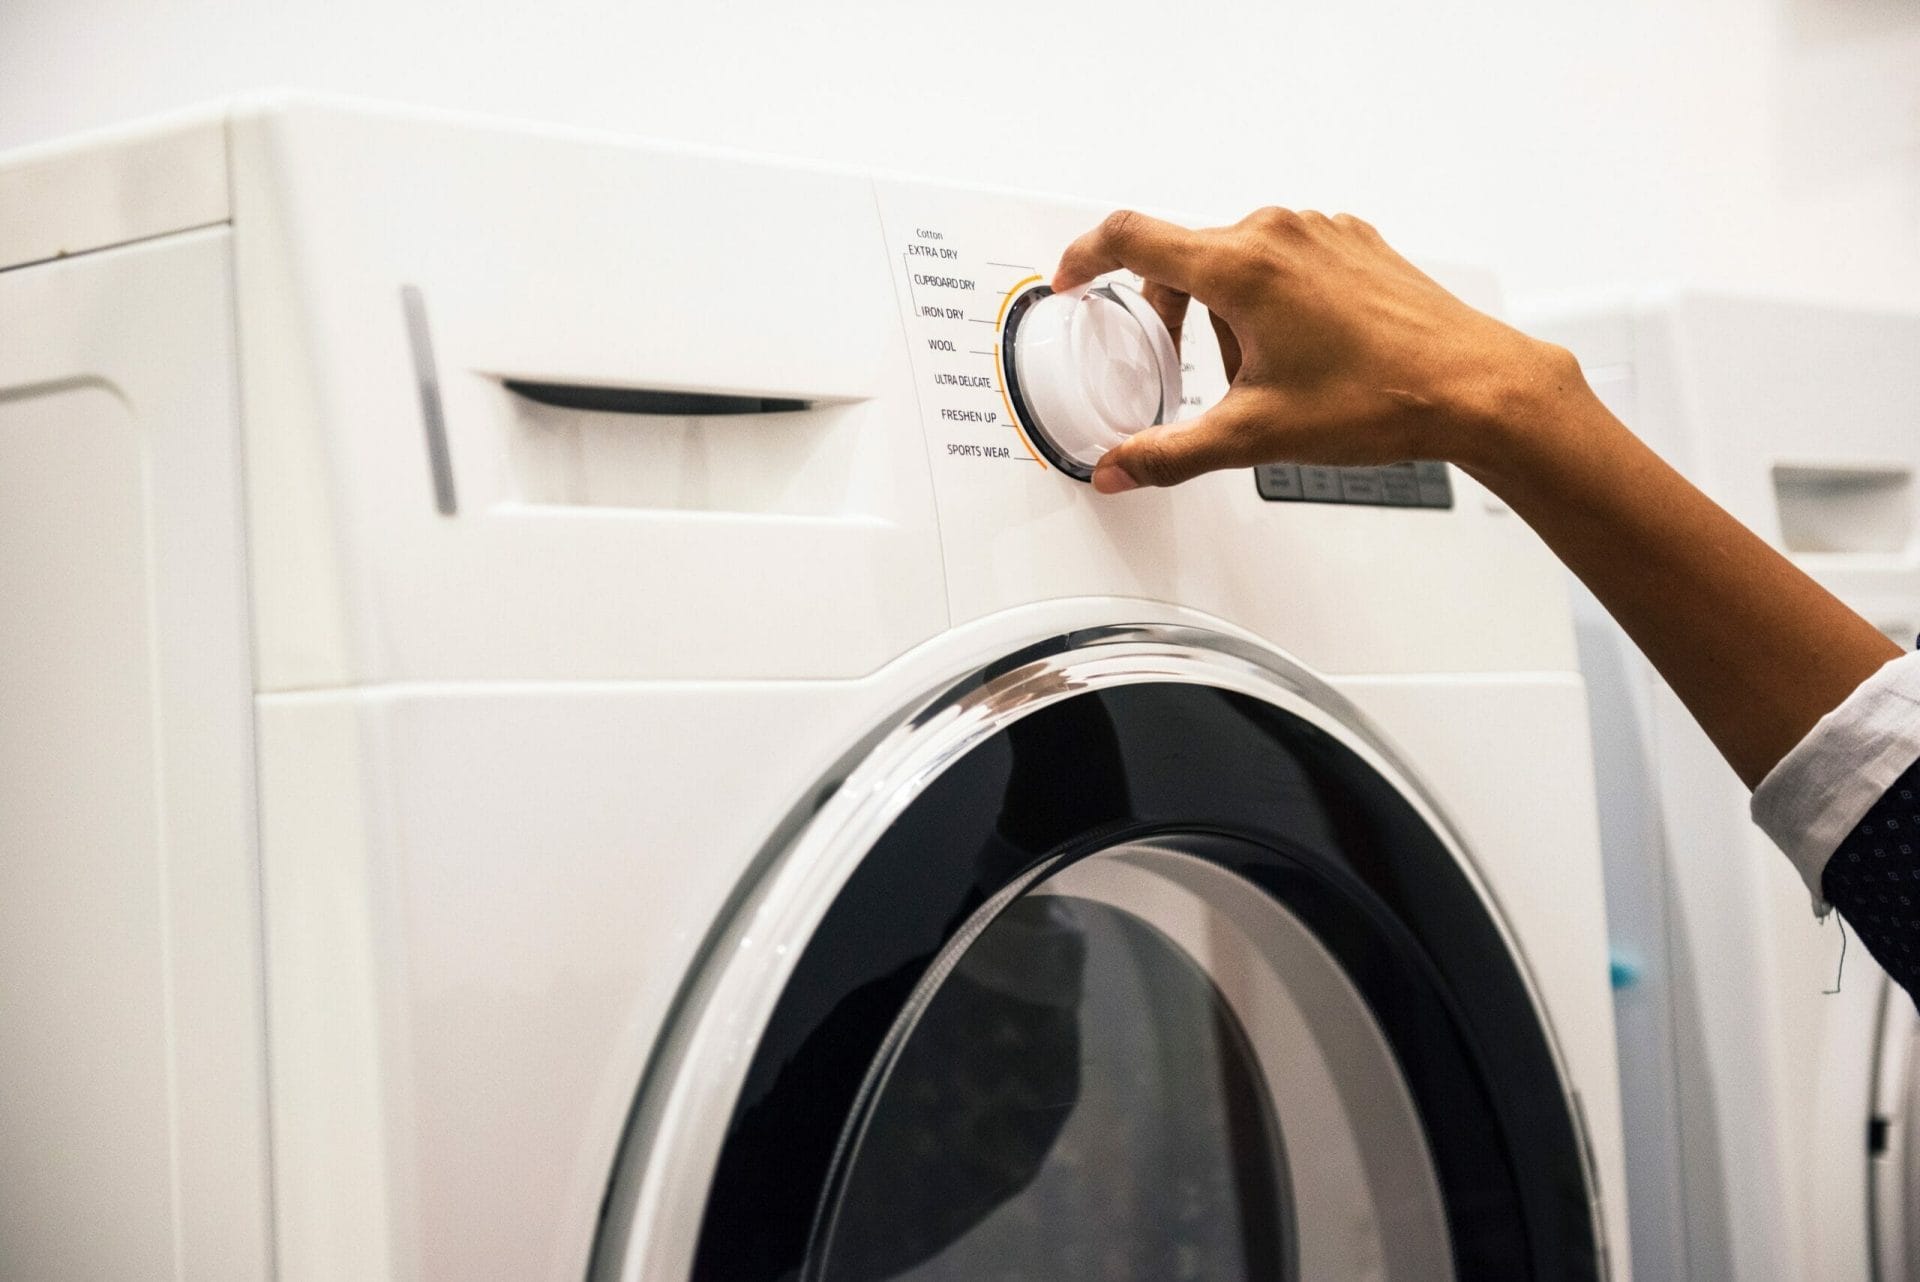 Lavare i panni in lavatrice con una certa frequenza può accorciarne la vita